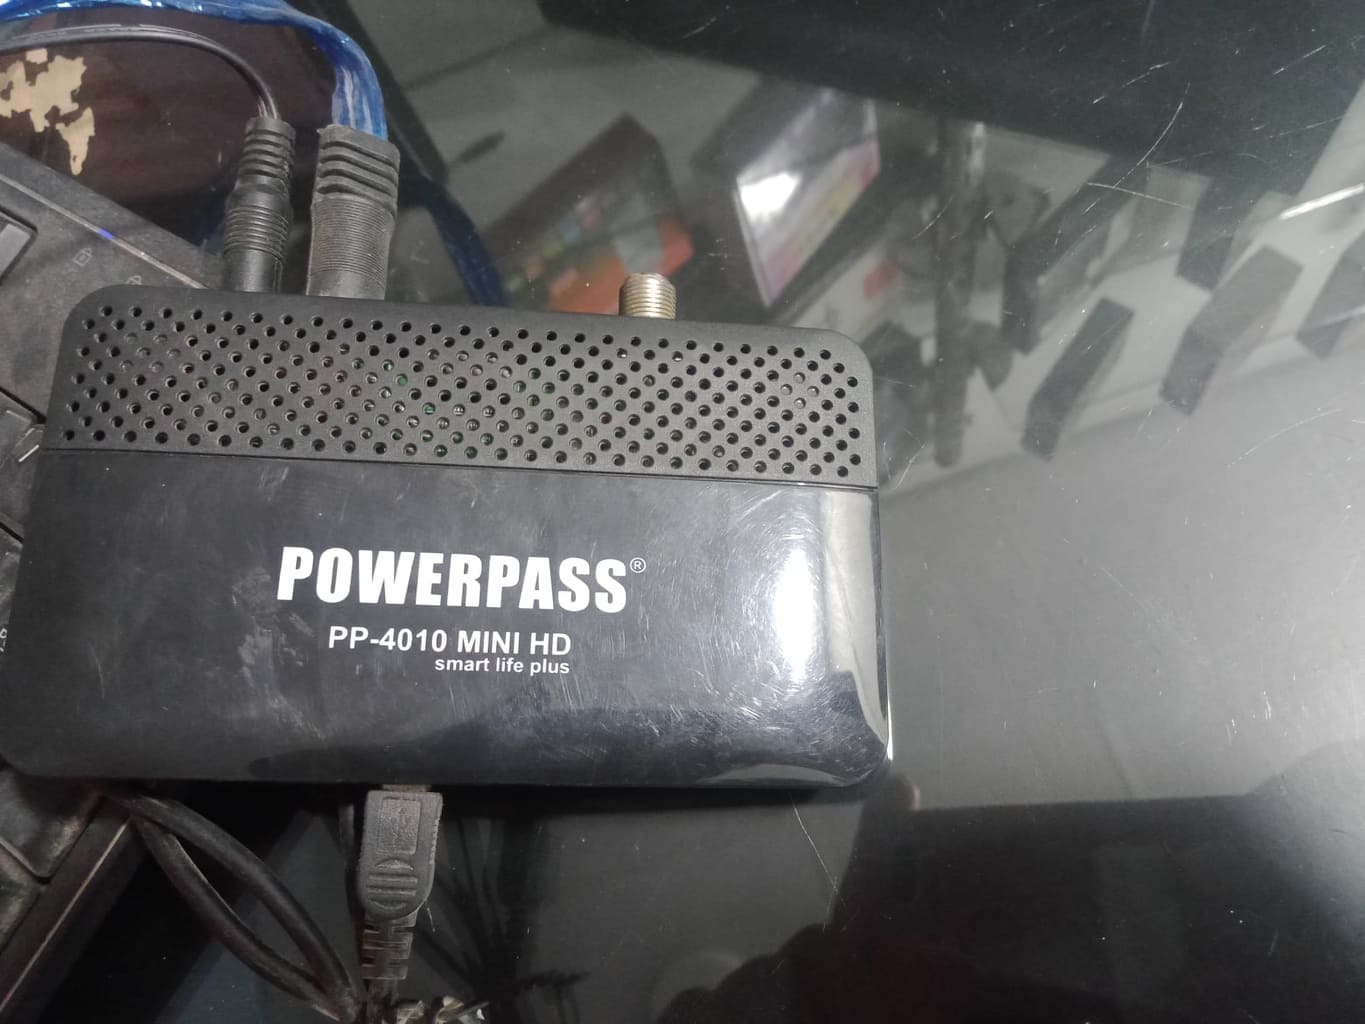 حصريا احدث ملف قنوات انجليزي powerpass pp-4010 mini hd smart life plus معالج مونتاج تاريخ 27-1-2023 P_2104kpue01